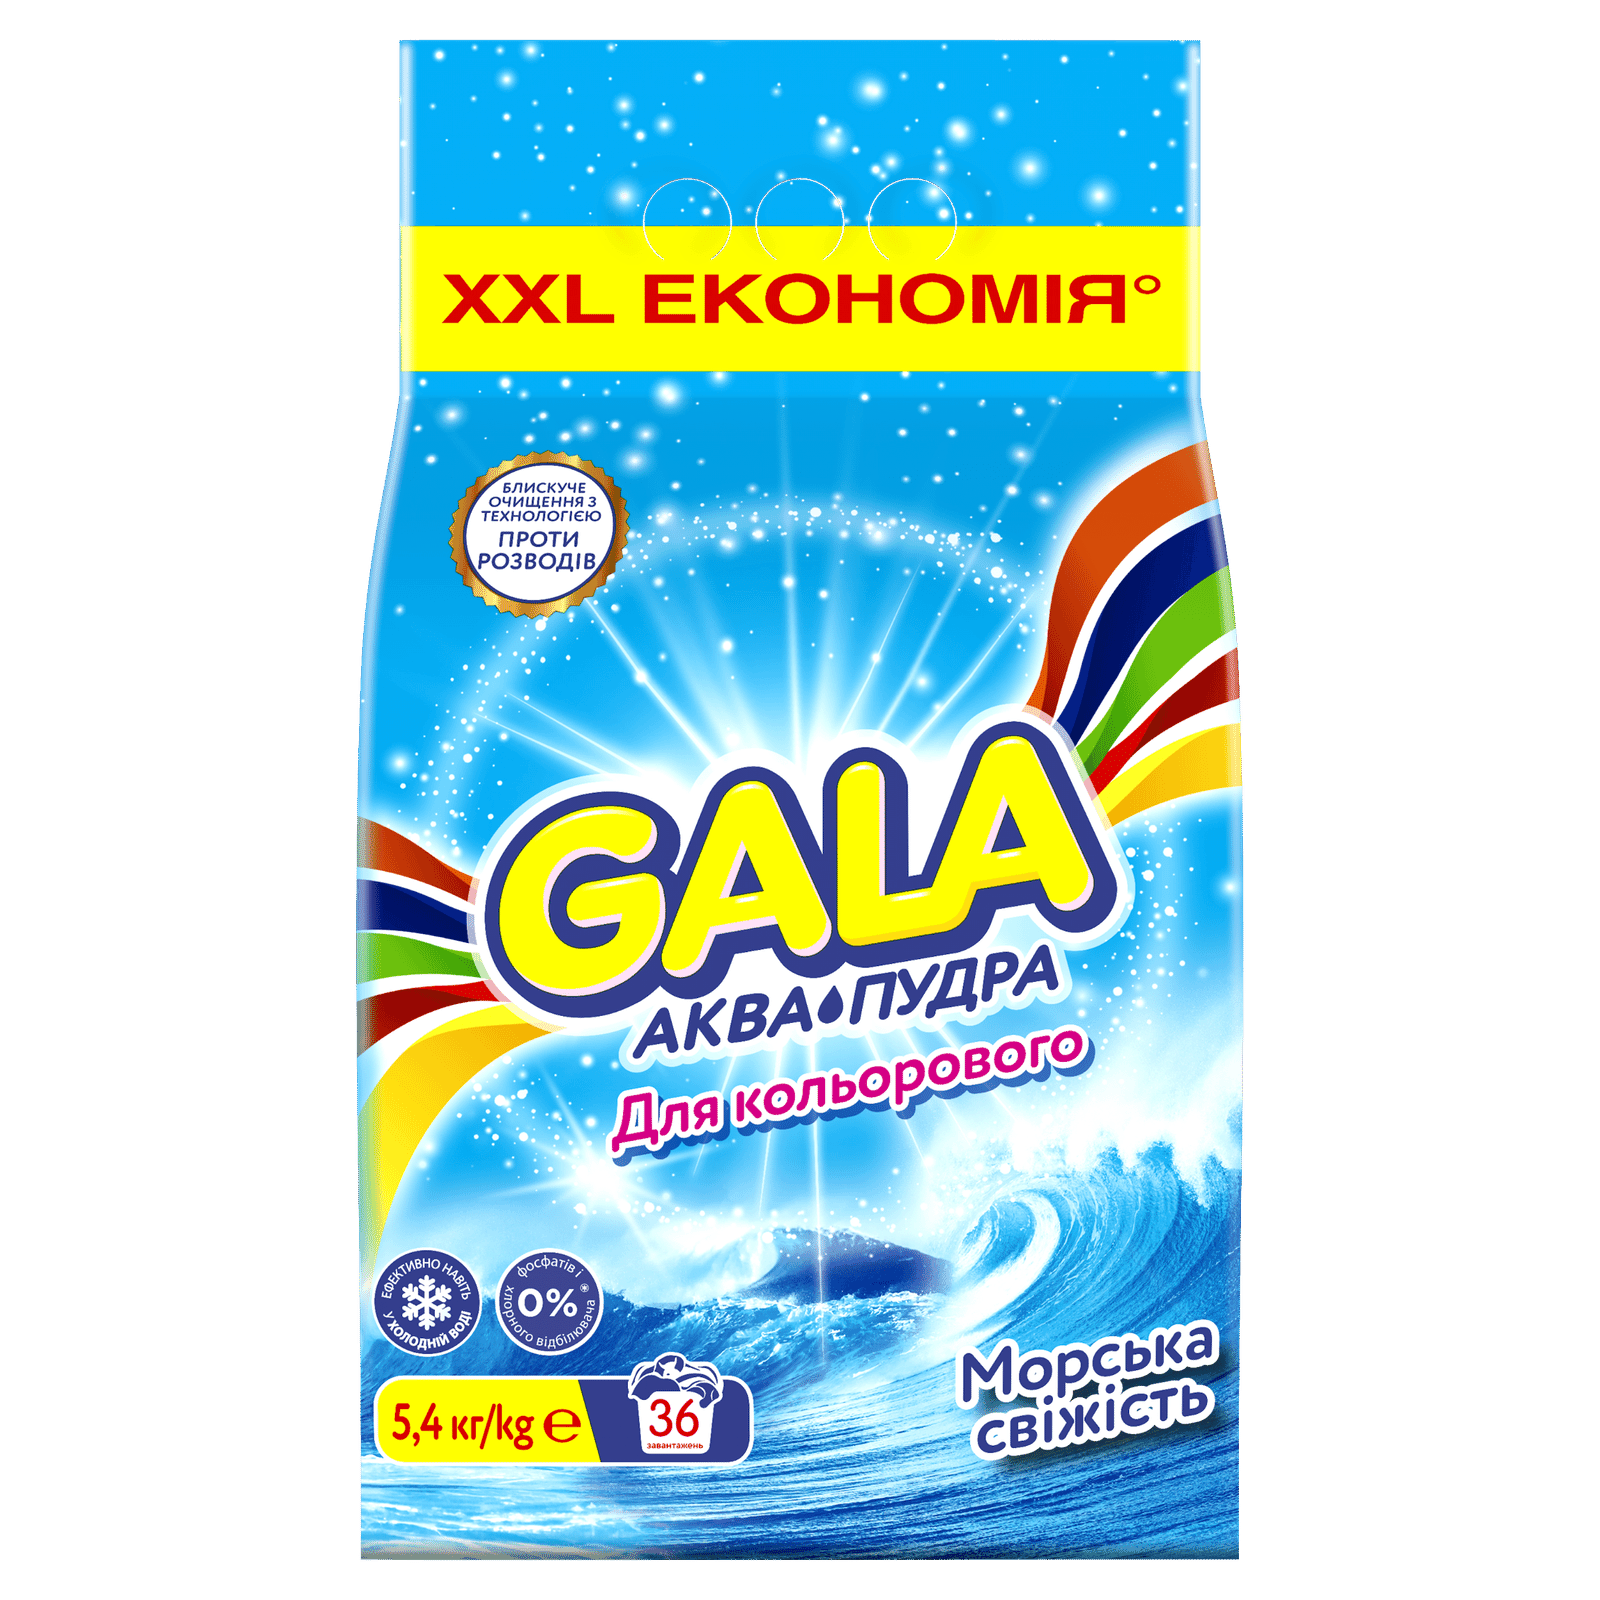 Порошок пральний Gala Аква-Пудра Морозна свіжість для кольорових речей автомат - 1